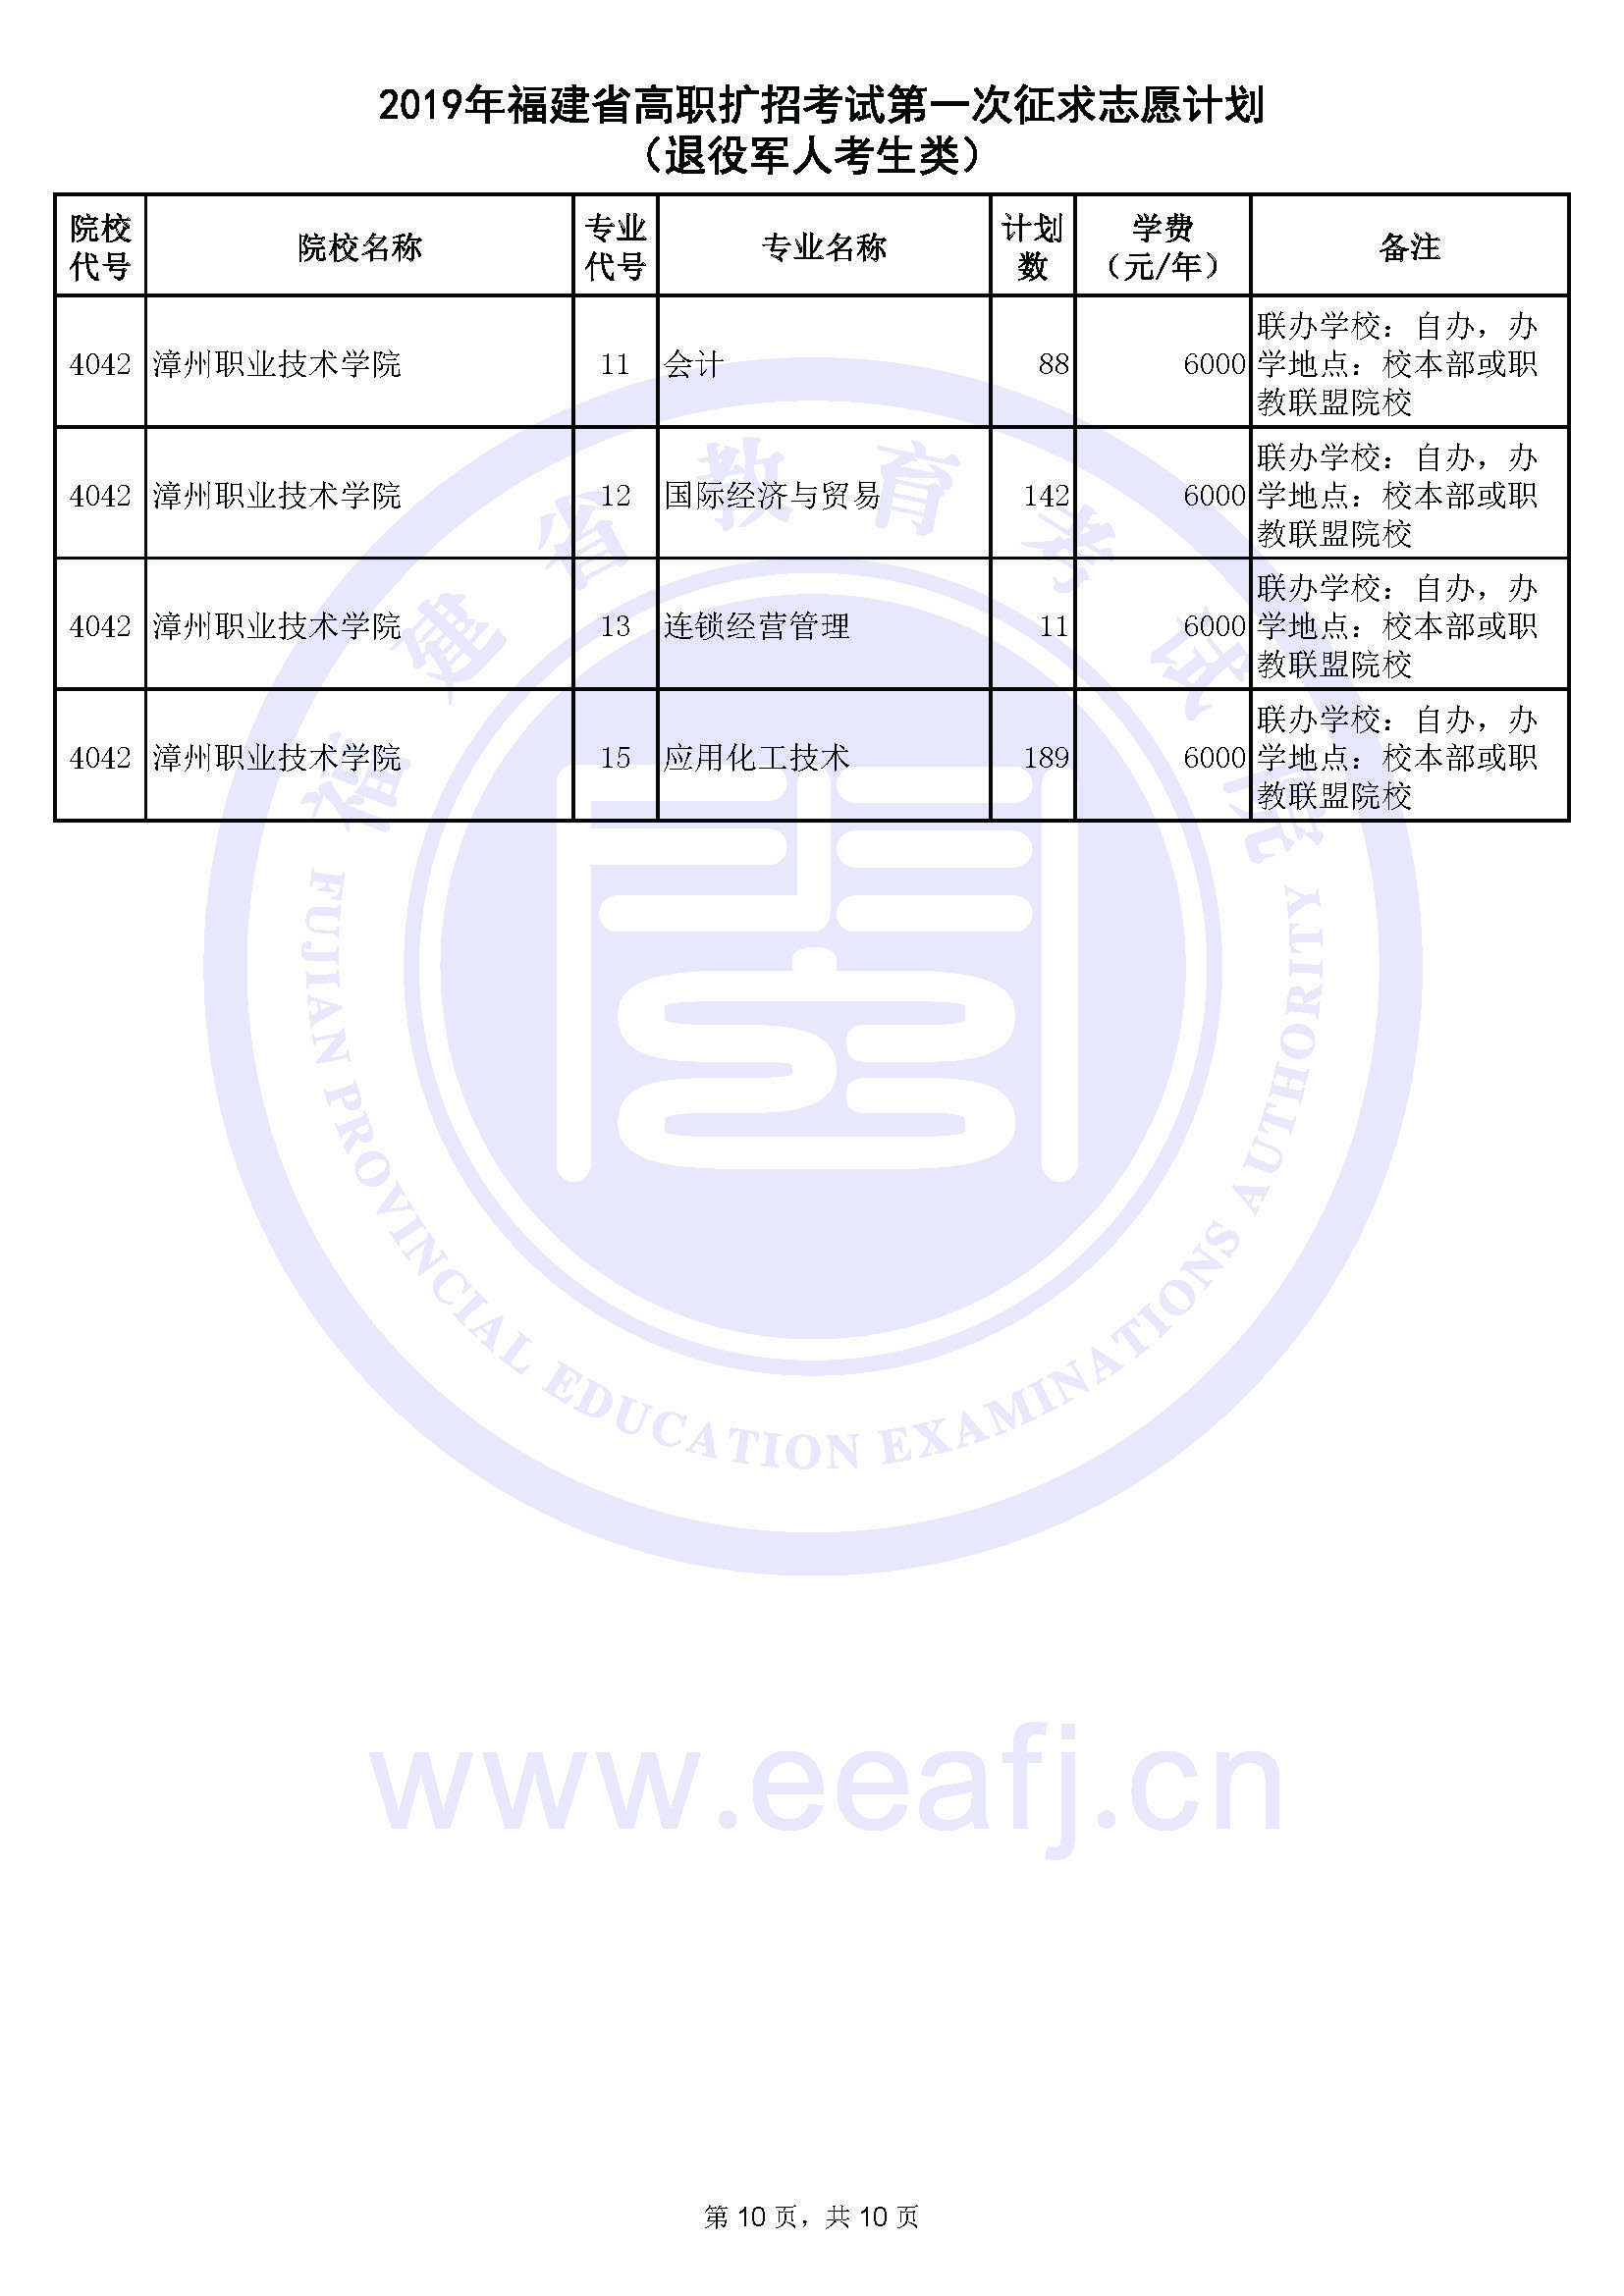 2019年福建省高职扩招考试第一次征求志愿计划